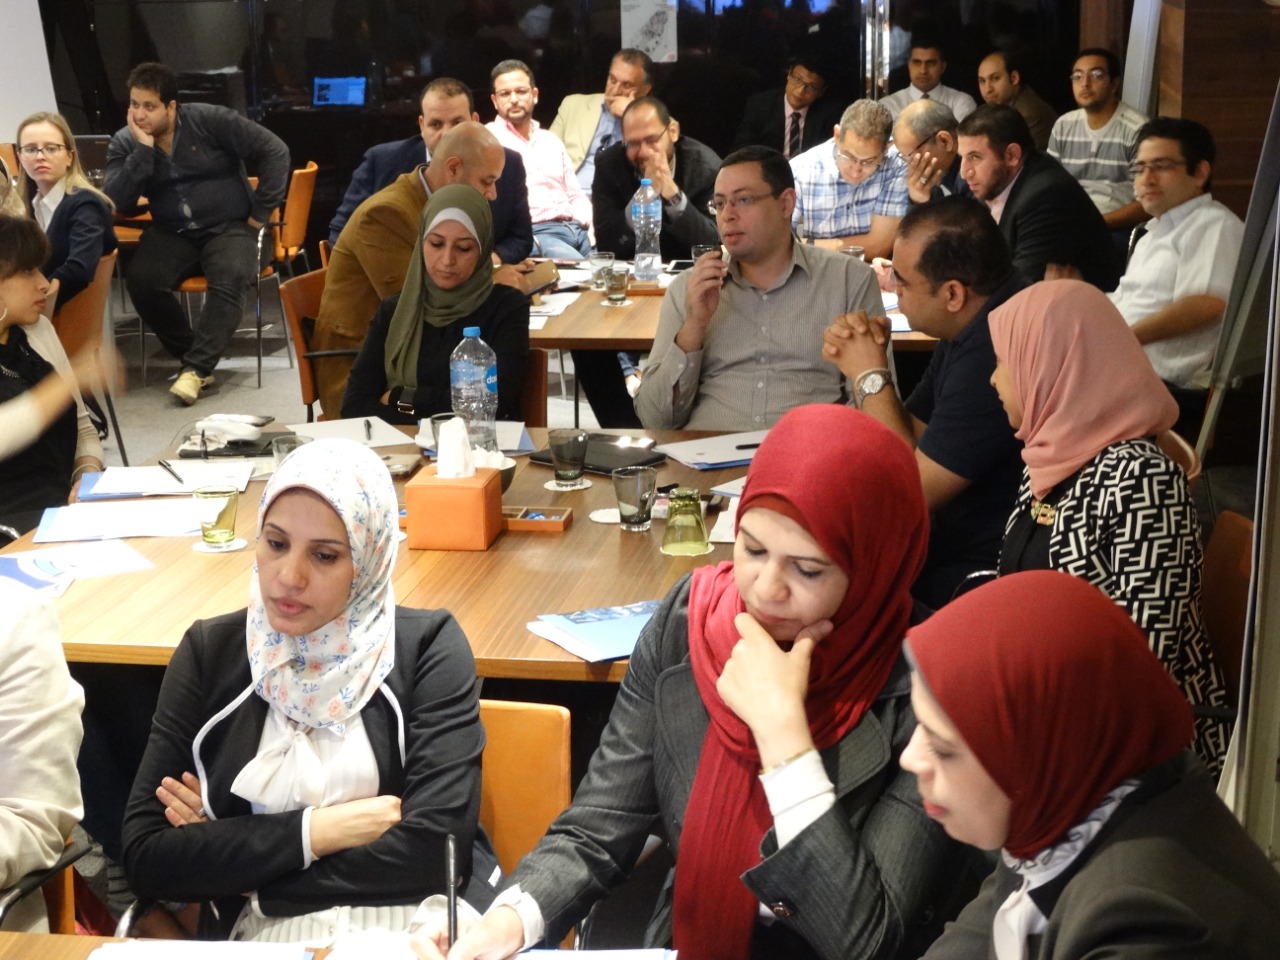 ورشة العمل  تقام  في  إطار مشروع تعزيز قدرات أنظمة الرقابة على الغذاء في مصر لتسهيل التجارة  (4)